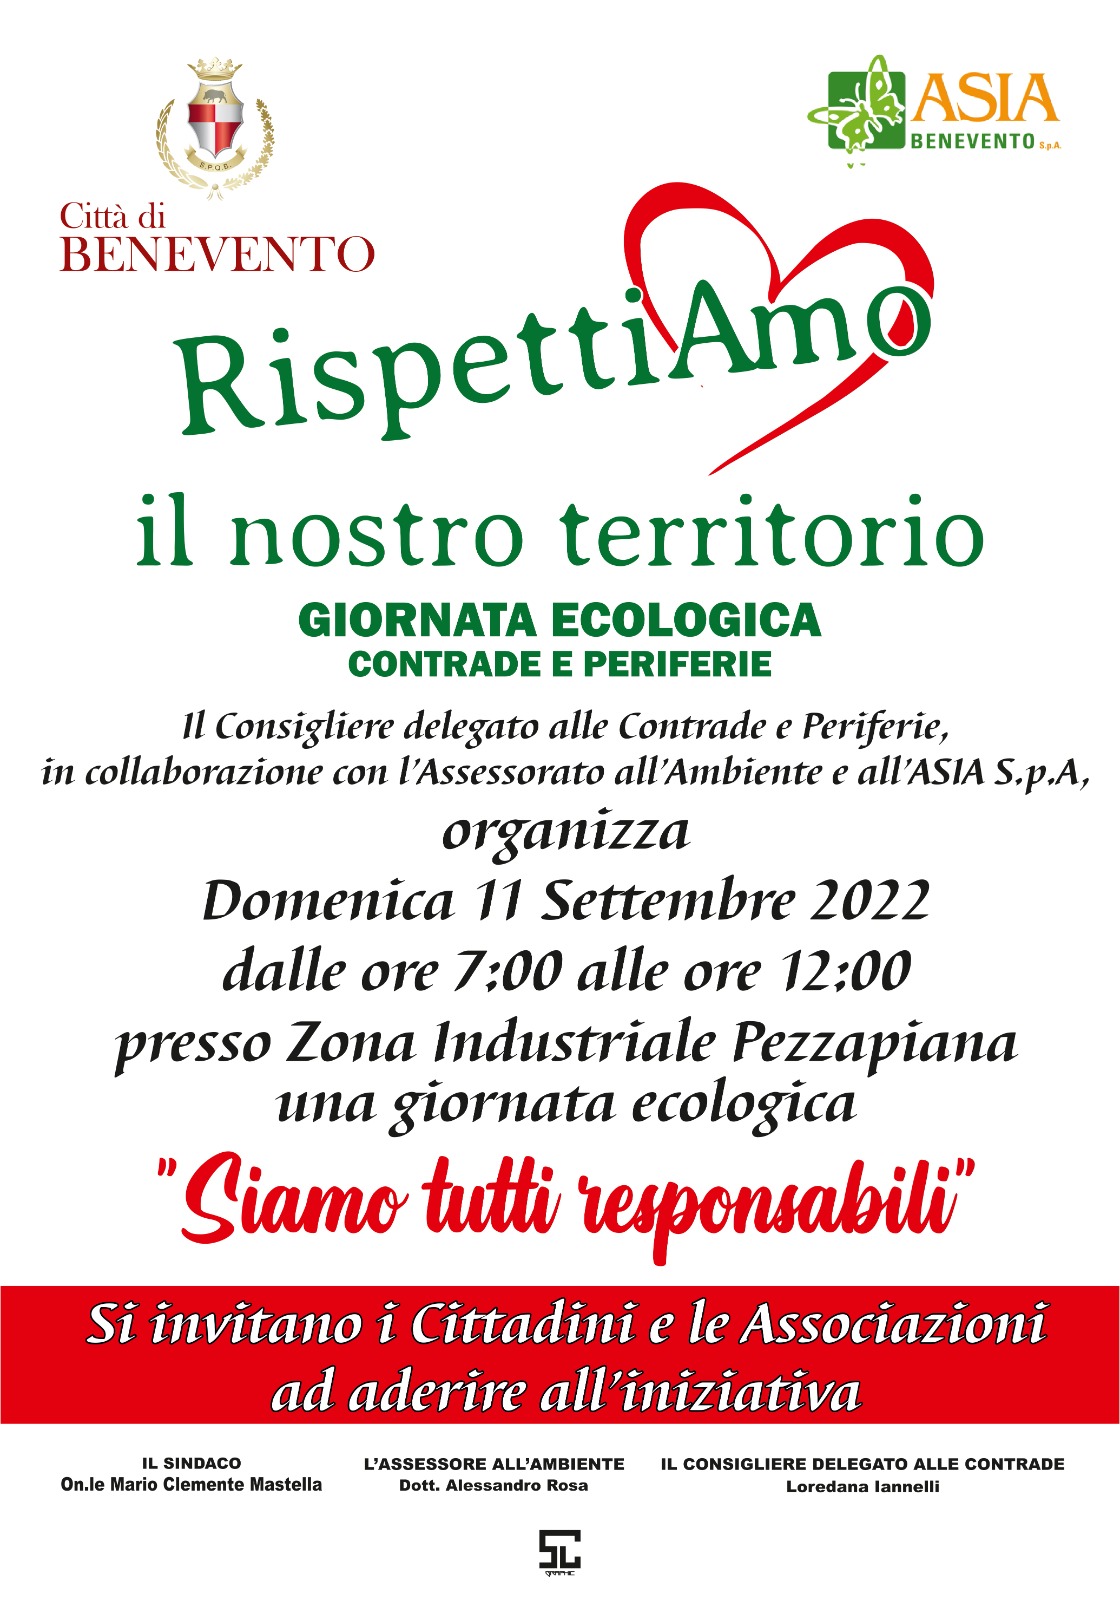 Domenica 11 settembre nella zona industriale di Pezzapiana si terrà la giornata ecologica denominata “Siamo tutti responsabili”